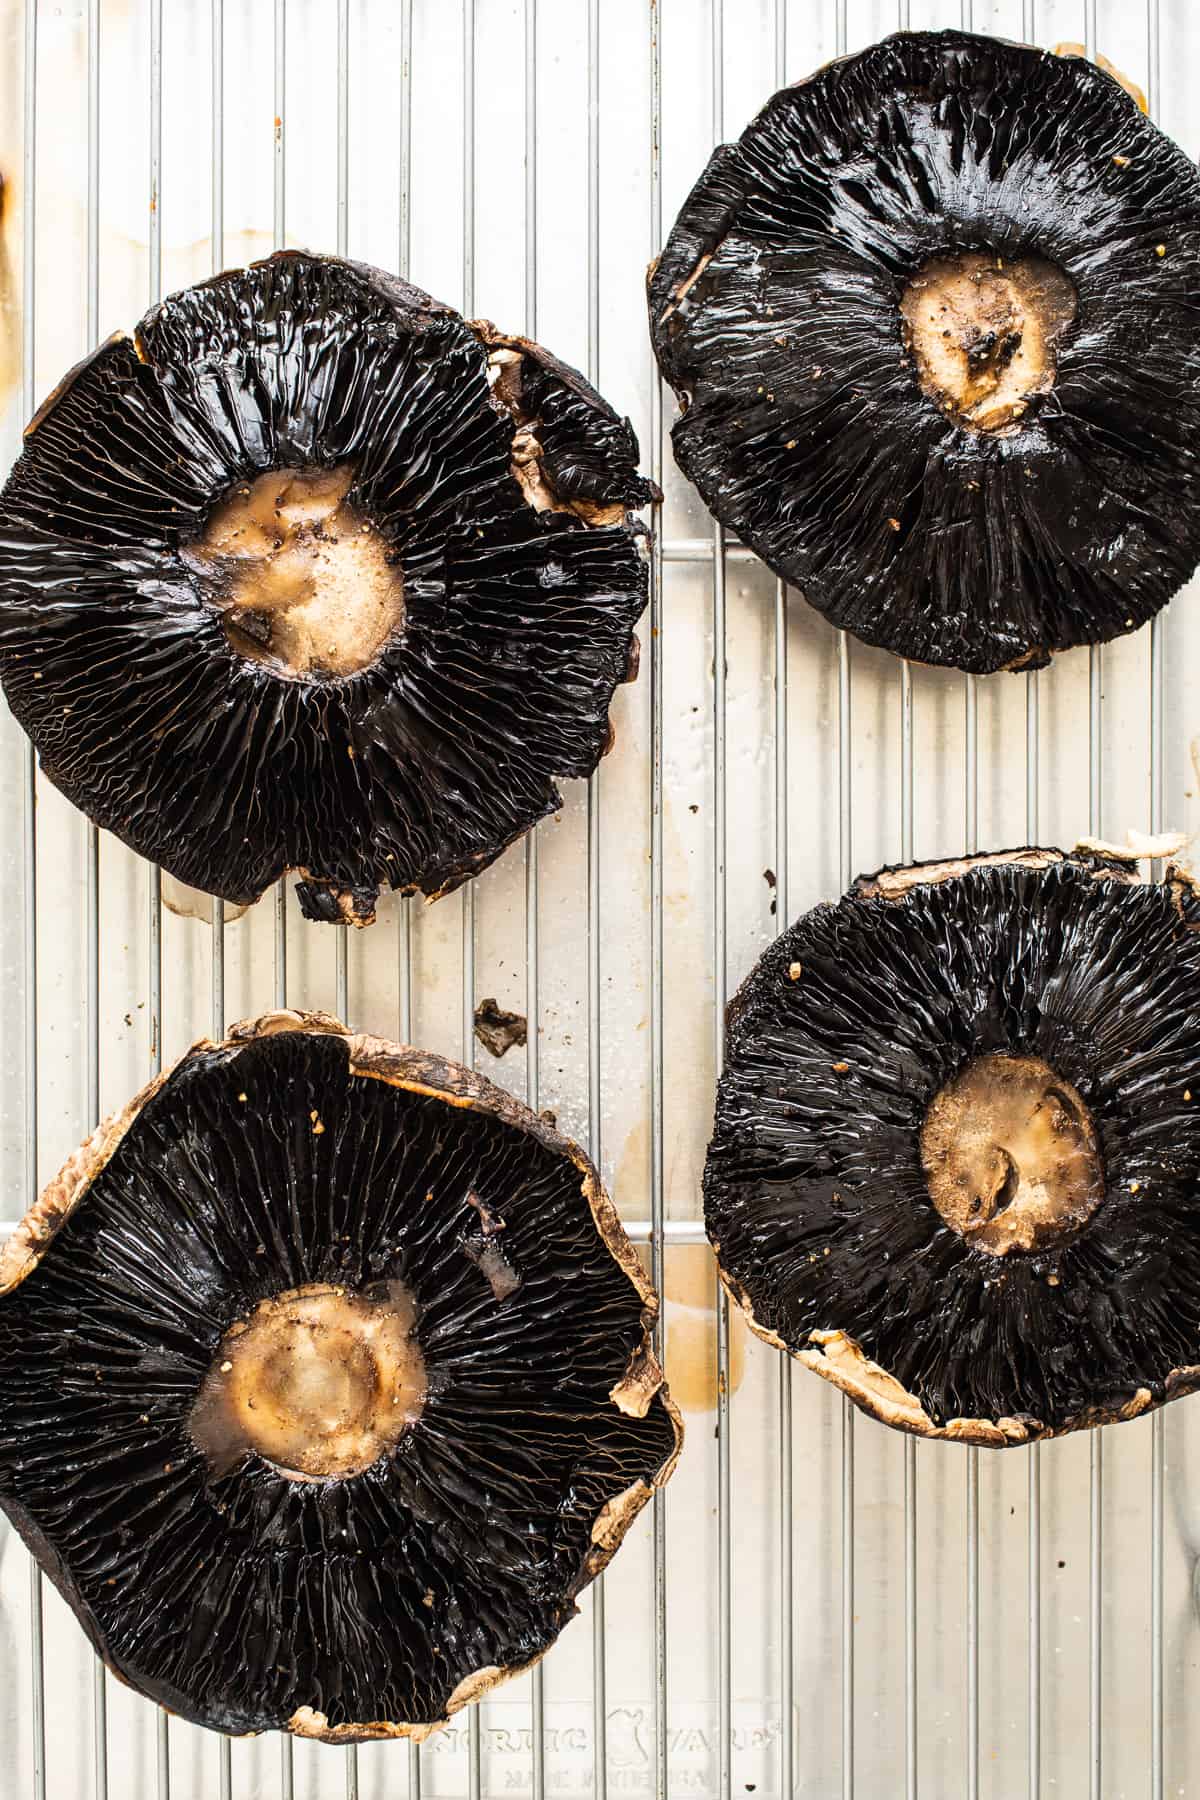 Funghi Portobello su una teglia.